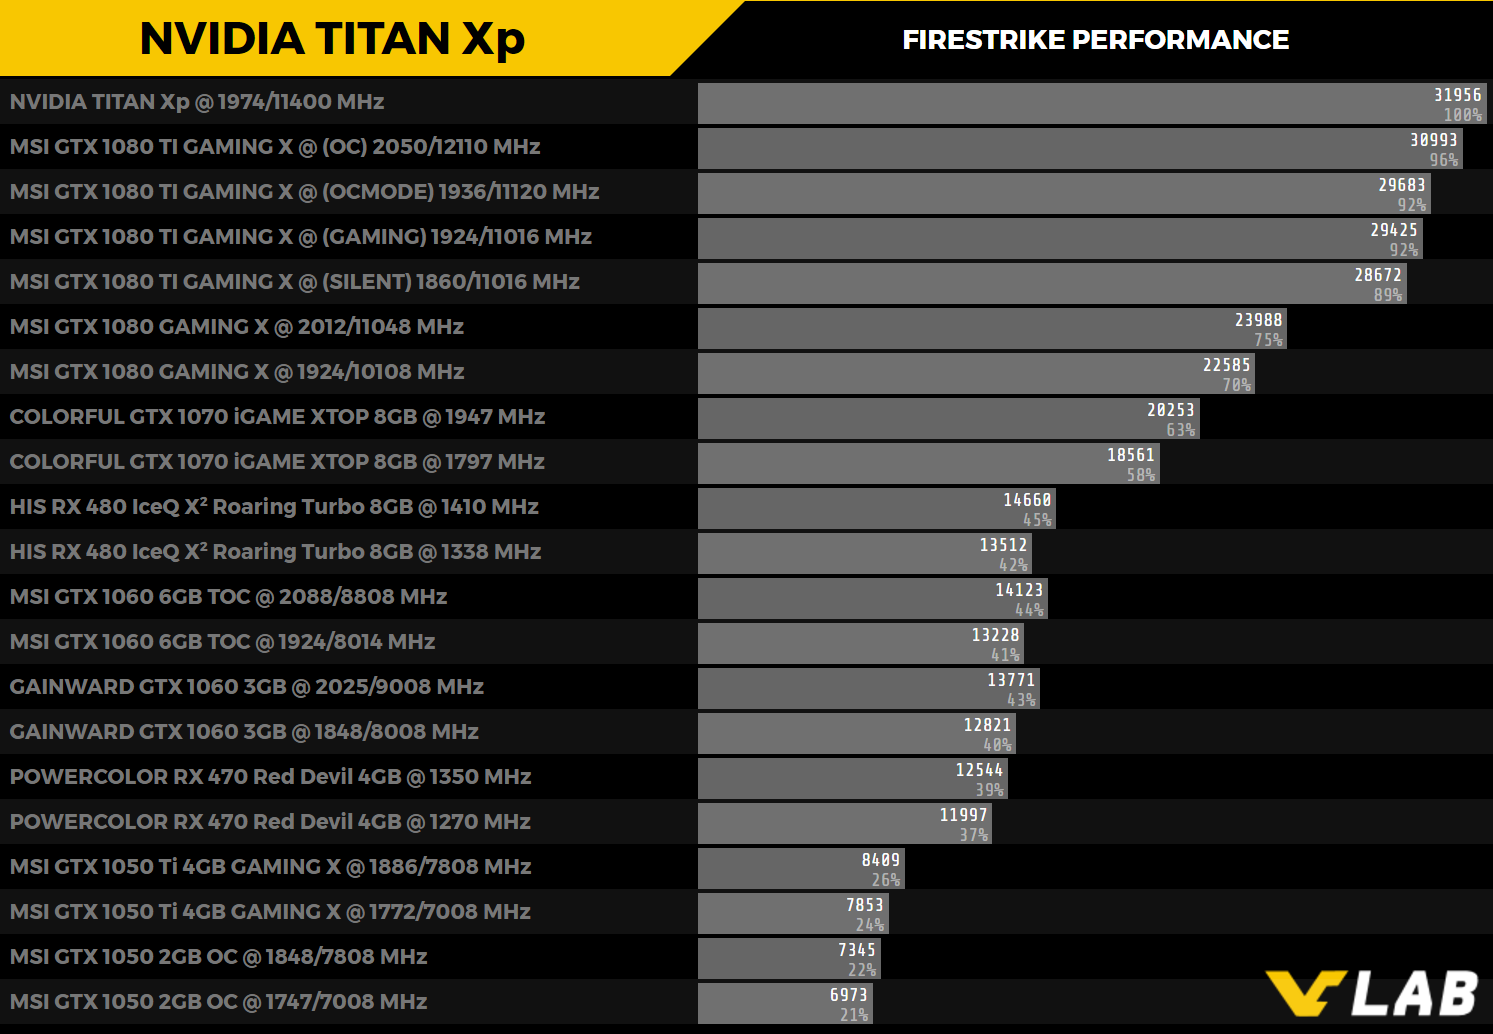 Inde Skærpe Dum First NVIDIA TITAN Xp benchmark result emerges - VideoCardz.com